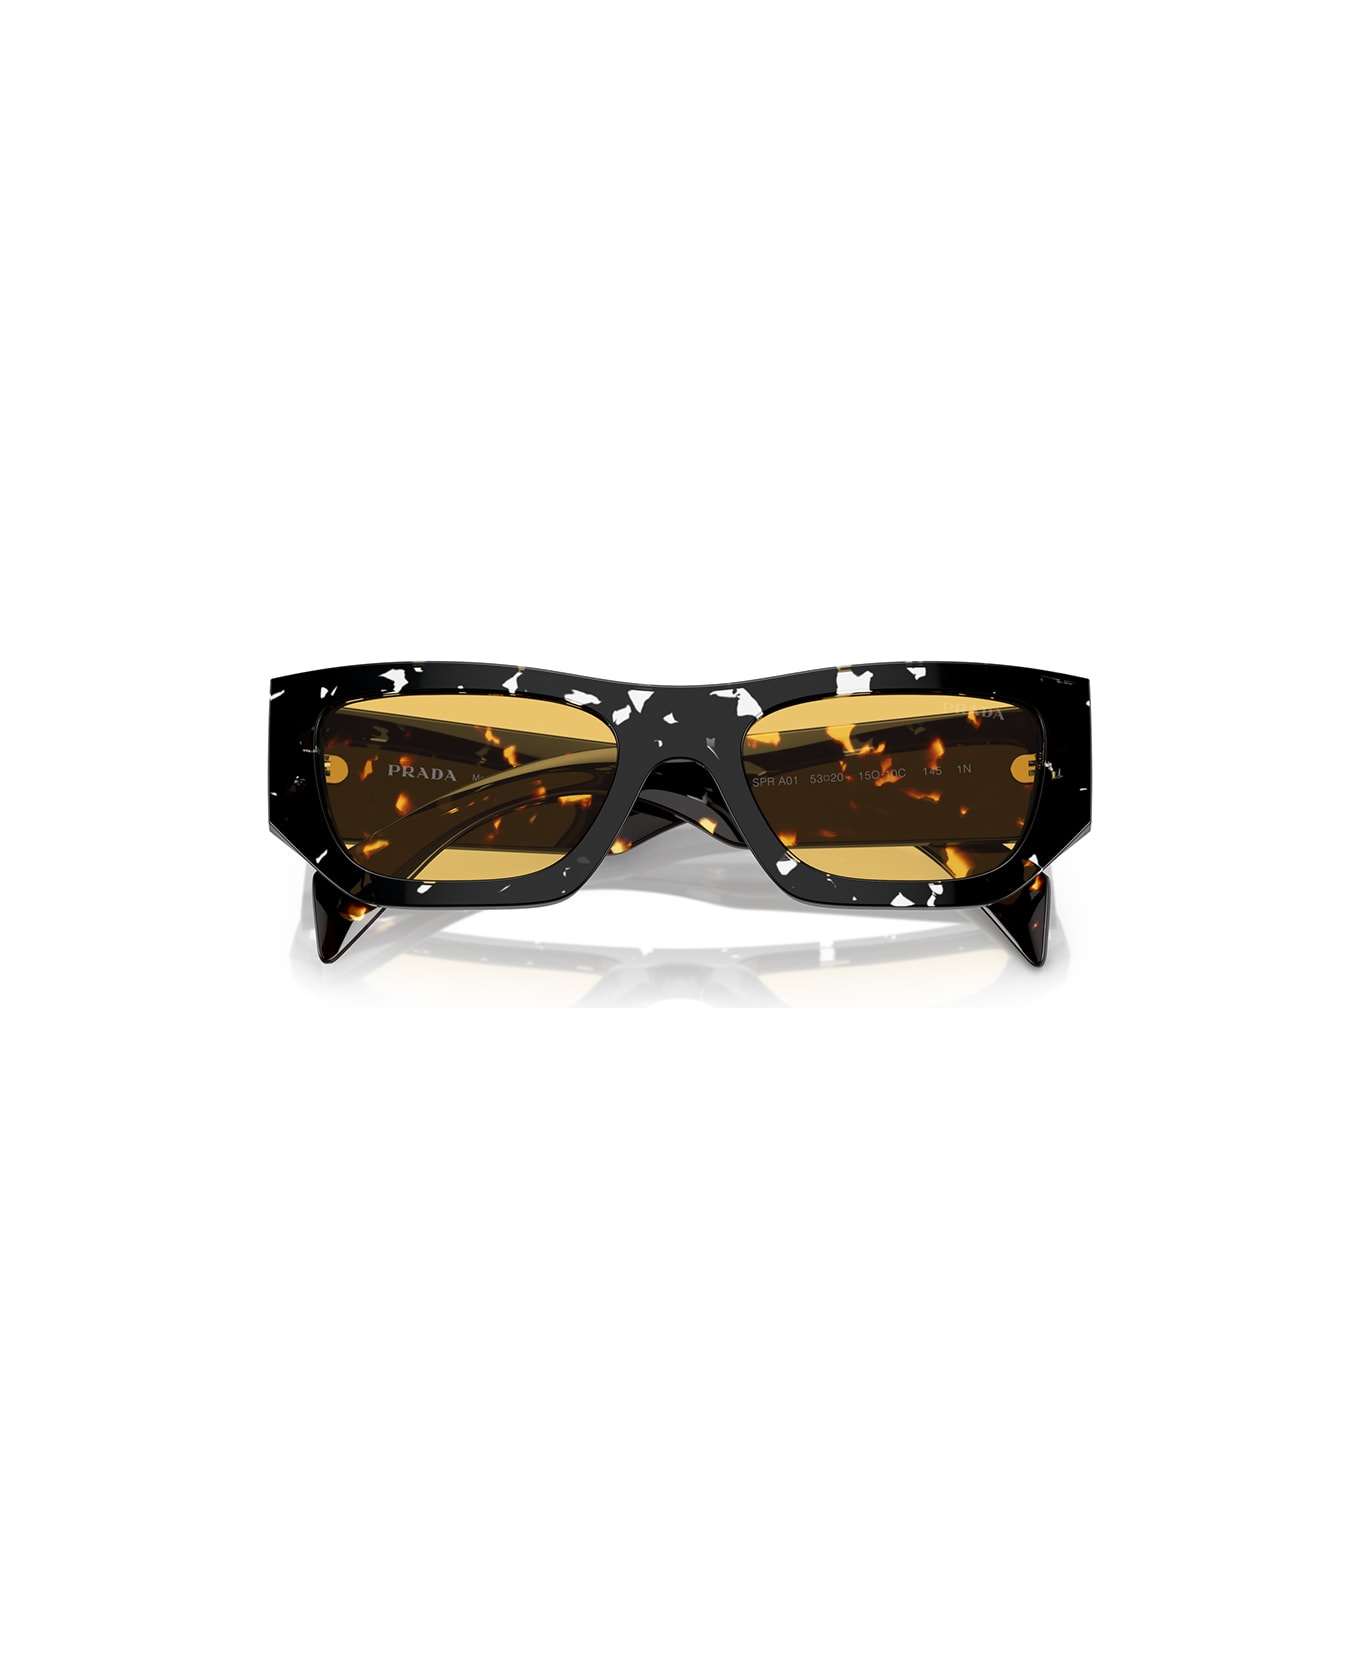 Prada Eyewear Sunglasses - Nero/Giallo